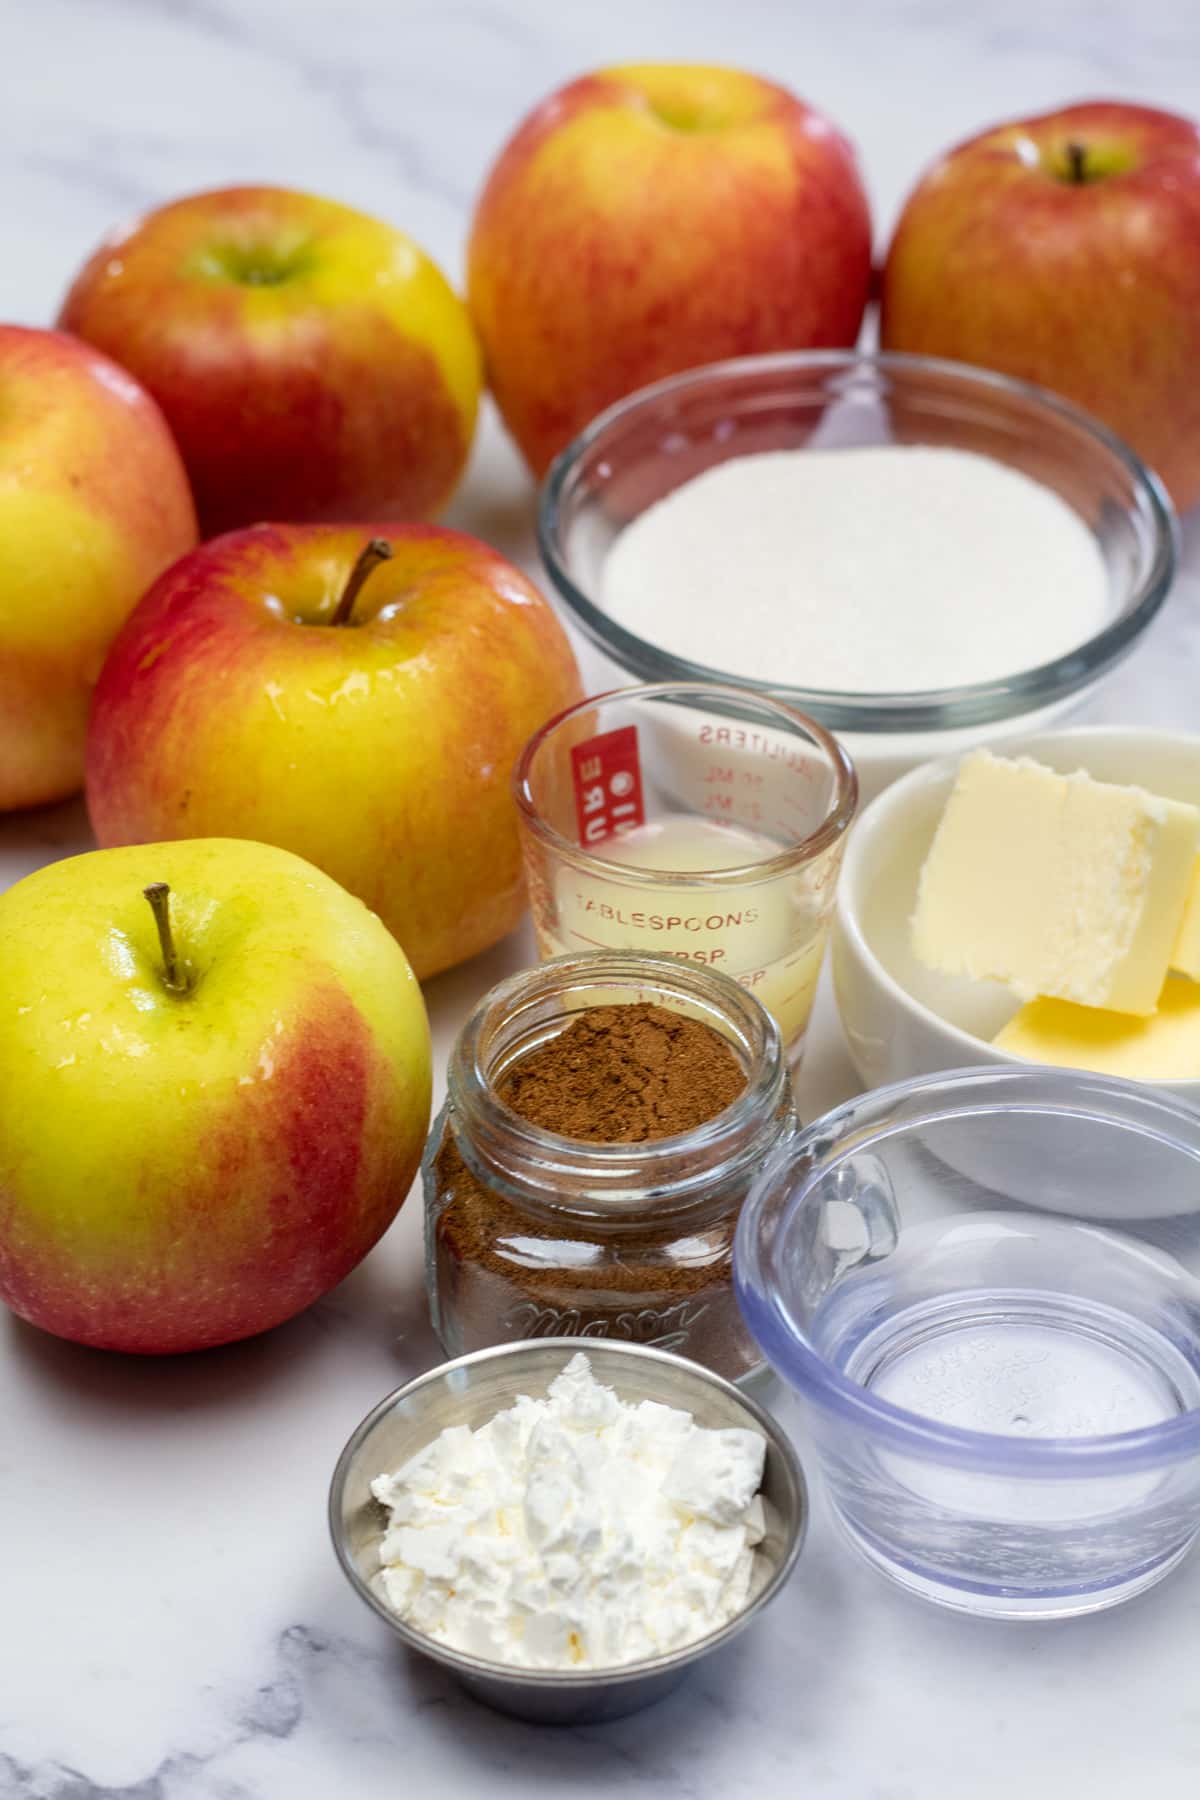 Grande photo montrant les ingrédients nécessaires à la fabrication d'une garniture pour tarte aux pommes.